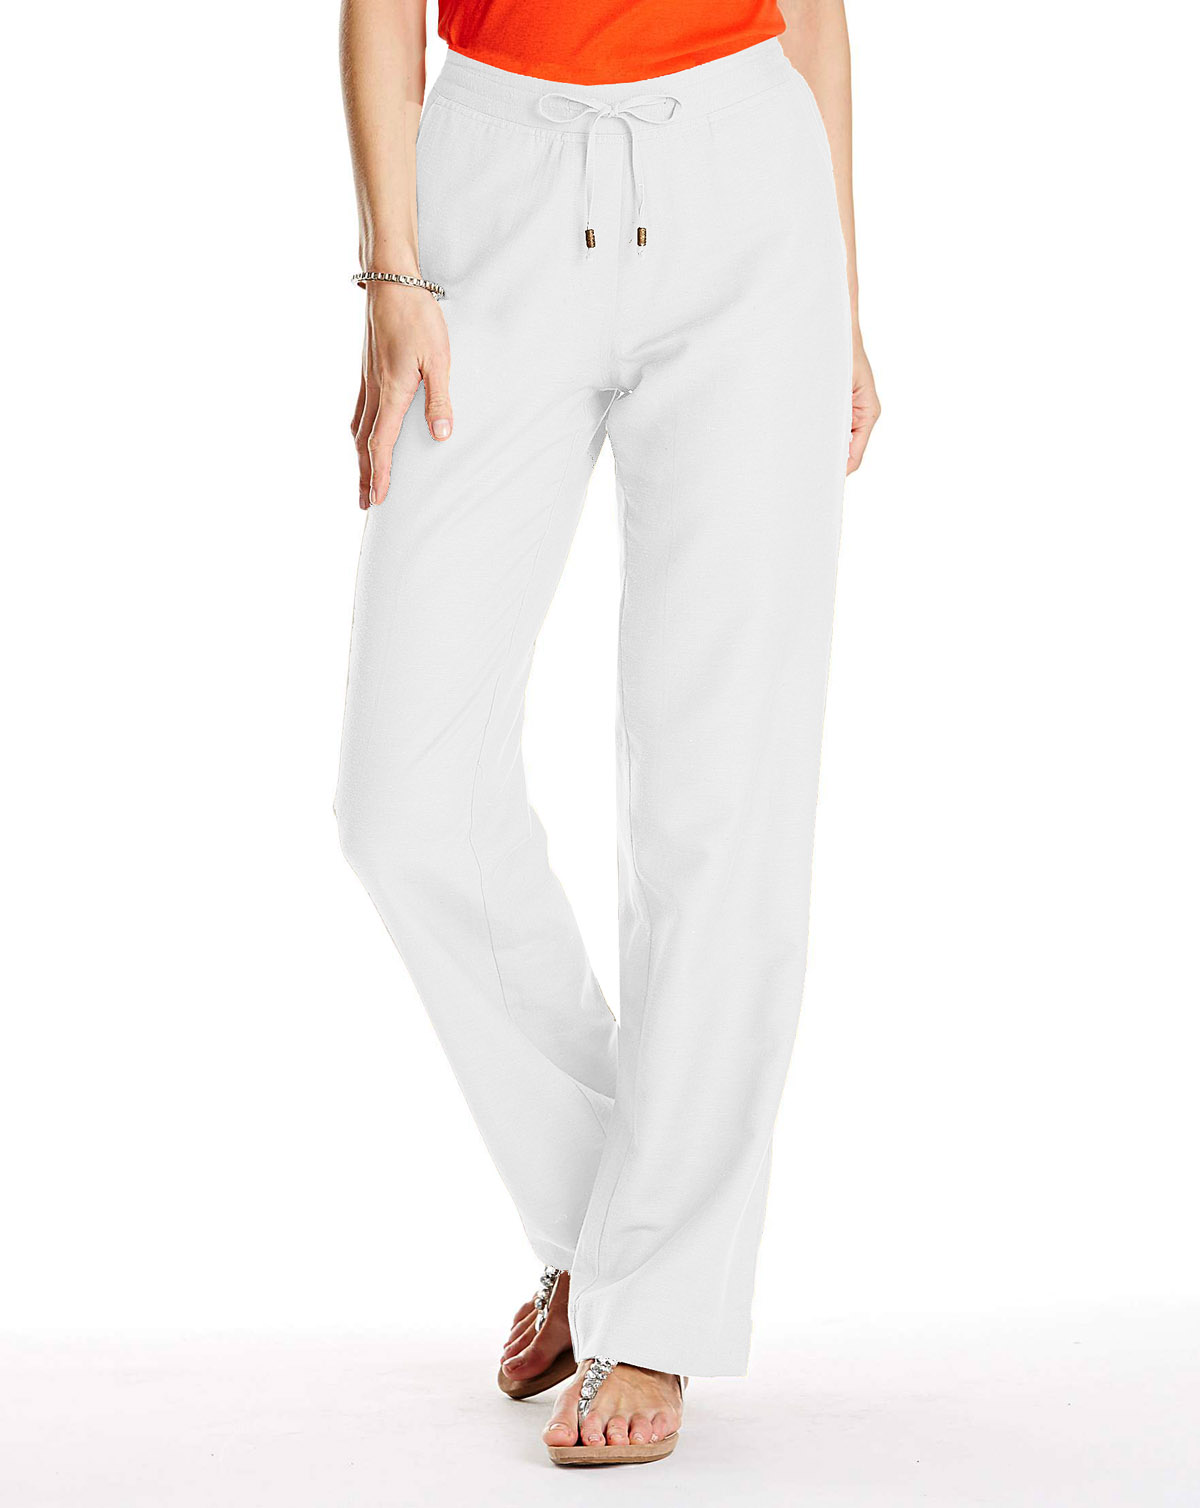 Wholesale Plus Size Clothing from Marisota - - Anthology WHITE Linen ...